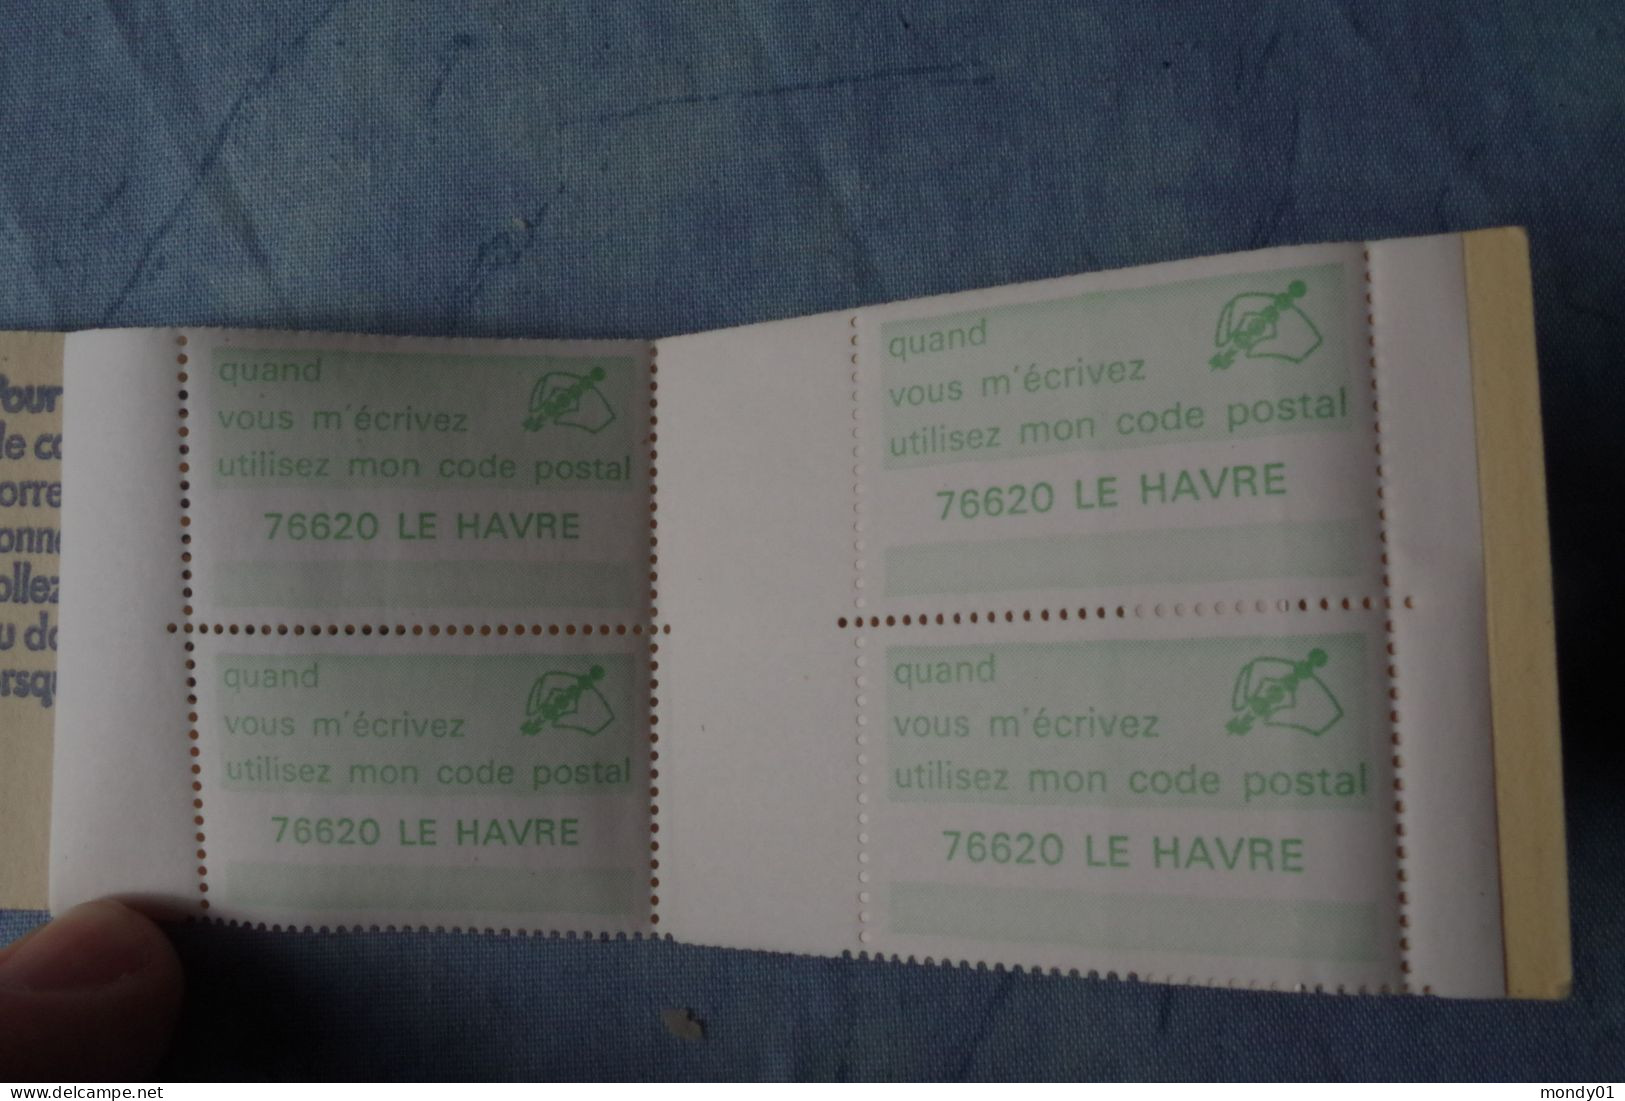 6-704  Postcode Zip Code Postal Vignette 1976  Label Carnet Le Havre 76620 4 Vignettes France Postleizahl Codego - Code Postal